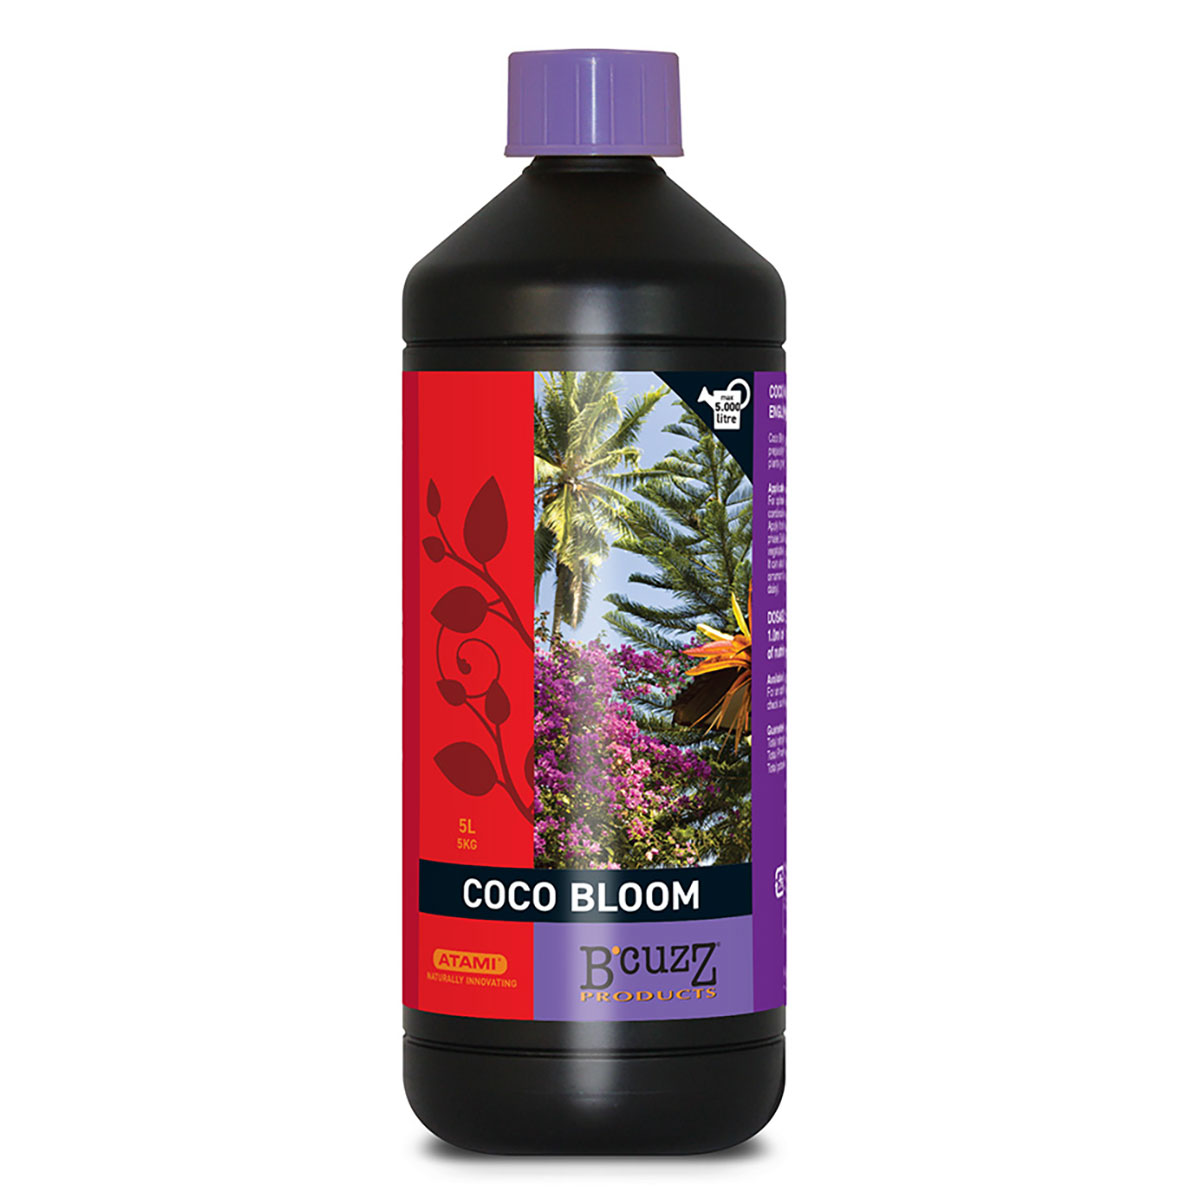 ココ栽培のために開発された開花促進剤です。※ビタミンB1配合Coco Bloom Stimulatorは、ココヤシ栽培のために特別に開発されました。植物が花芽を形成し始めたら使用開始します。Coco Bloom Stimulatorは、開花期をより濃厚で、より長く持続させます。その結果、密集した質の良い花を沢山咲かせ、収穫期には味と香りの良い果実を実らせることができるのです。※脂肪酸、アミノ酸、フミン酸、海藻エキス(ビタミンB1)から構成されています。■対応植物■(全ての顕花植物)トマト、セージ、バジルなど、さまざまな野菜や果樹、ハーブに適しています。また、鉢花や（アロカシア、ラベンダーなど）観葉植物にも使用できます。■使用方法■水1リットルに対して0.5〜1ml※花芽が付き始めたらメイン肥料で作った養液に混ぜてお使いください。※B'CUZZ COCO BOOSTER UNIと組み合わせて使用すると効果的です。※NPK値がほぼ無い為、他メーカーの液肥にビタミン剤として組み合わせてお使い頂けます。※投与量は一般的な量となっておりますが、植物によって必要量を見極め、調整し施肥しましょう。検索ワード：開花促進剤 BCUZZ COCO栽培 ATAMI B'CUZZ オランダ イギリス アタミ ビーカズ ココ ブルーム スティミュレーター